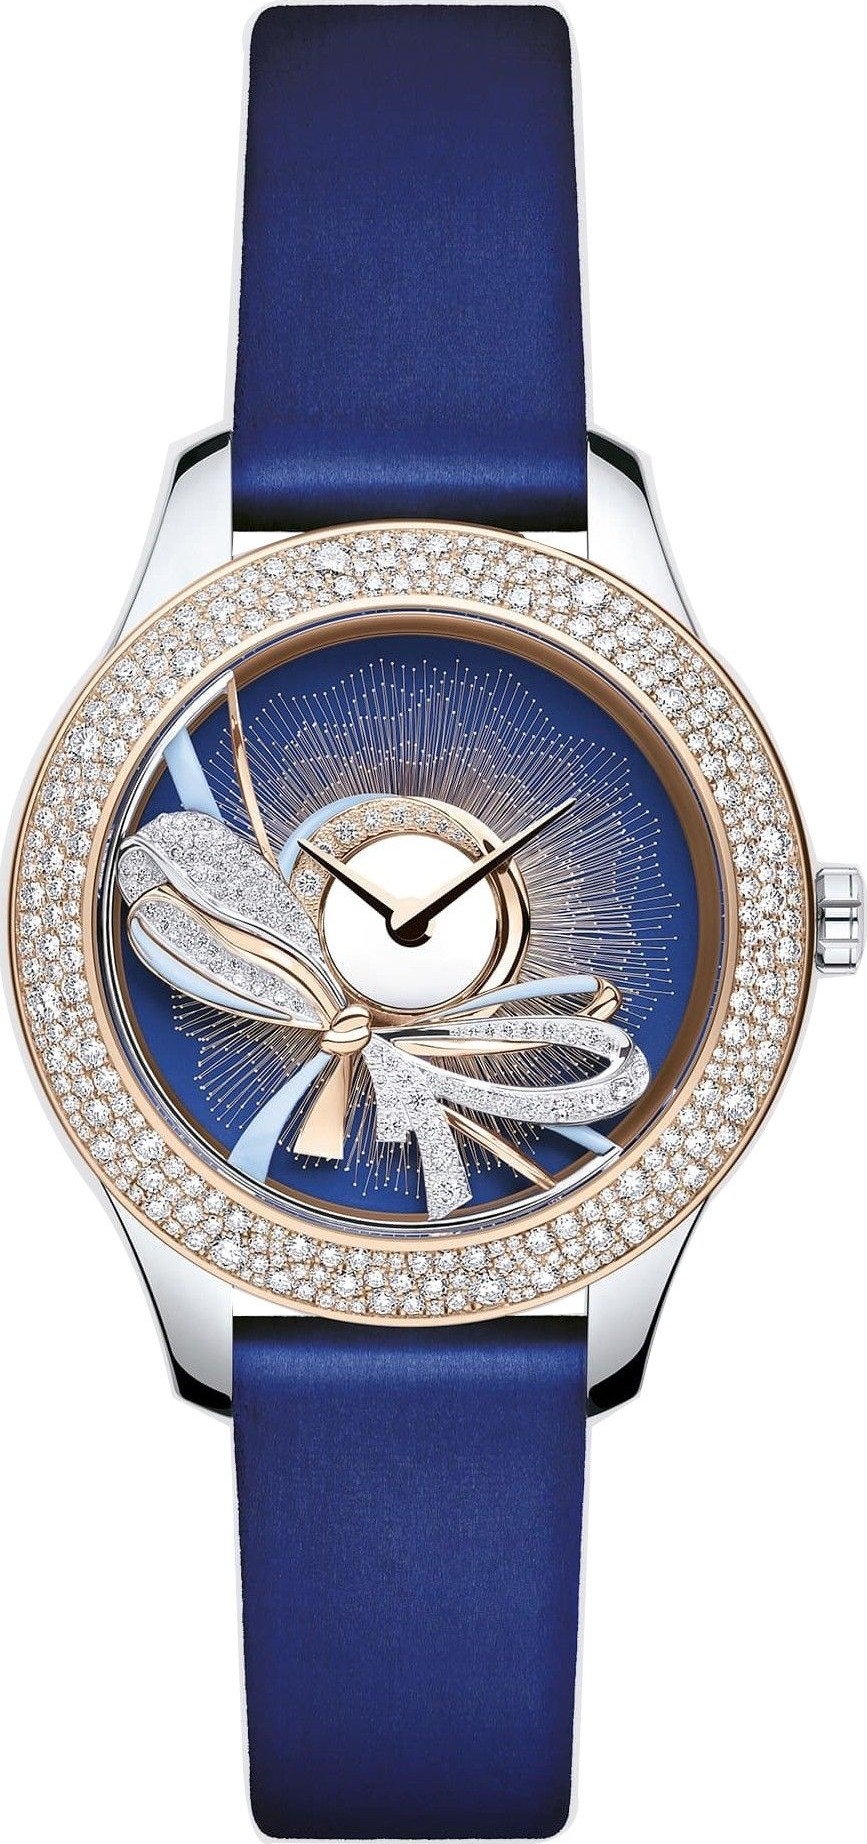 Đồng hồ Christian Dior Grand Bal Ruban CD153B2X1005_0000 Wacth 36mm